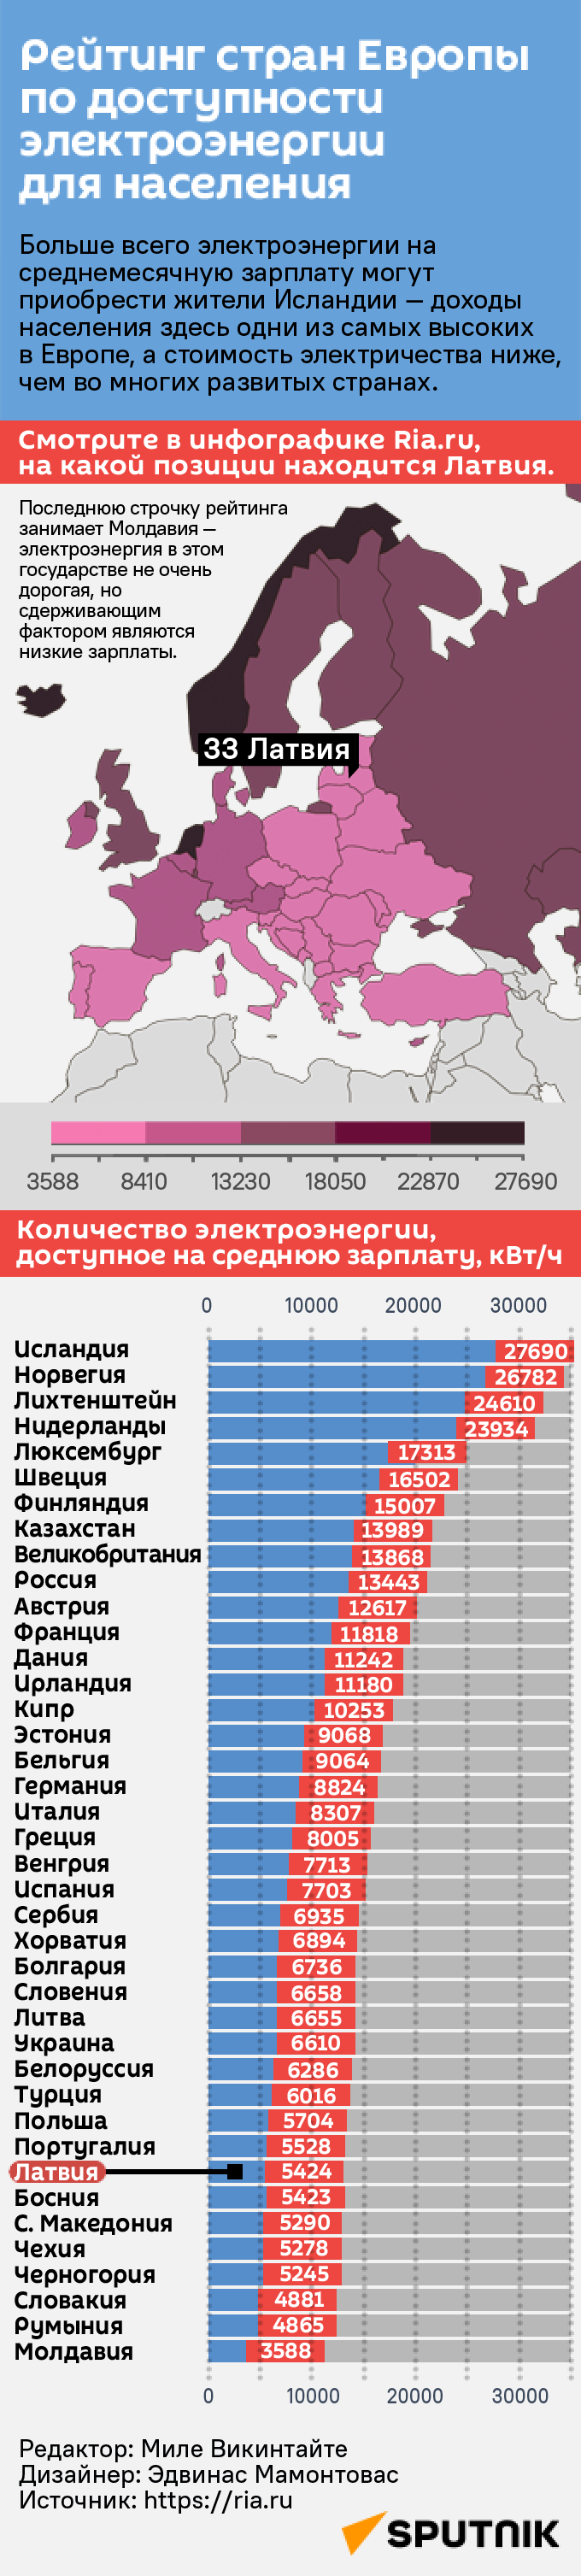 Рейтинг стран Европы по доступности электроэнергии для населения - Sputnik Латвия